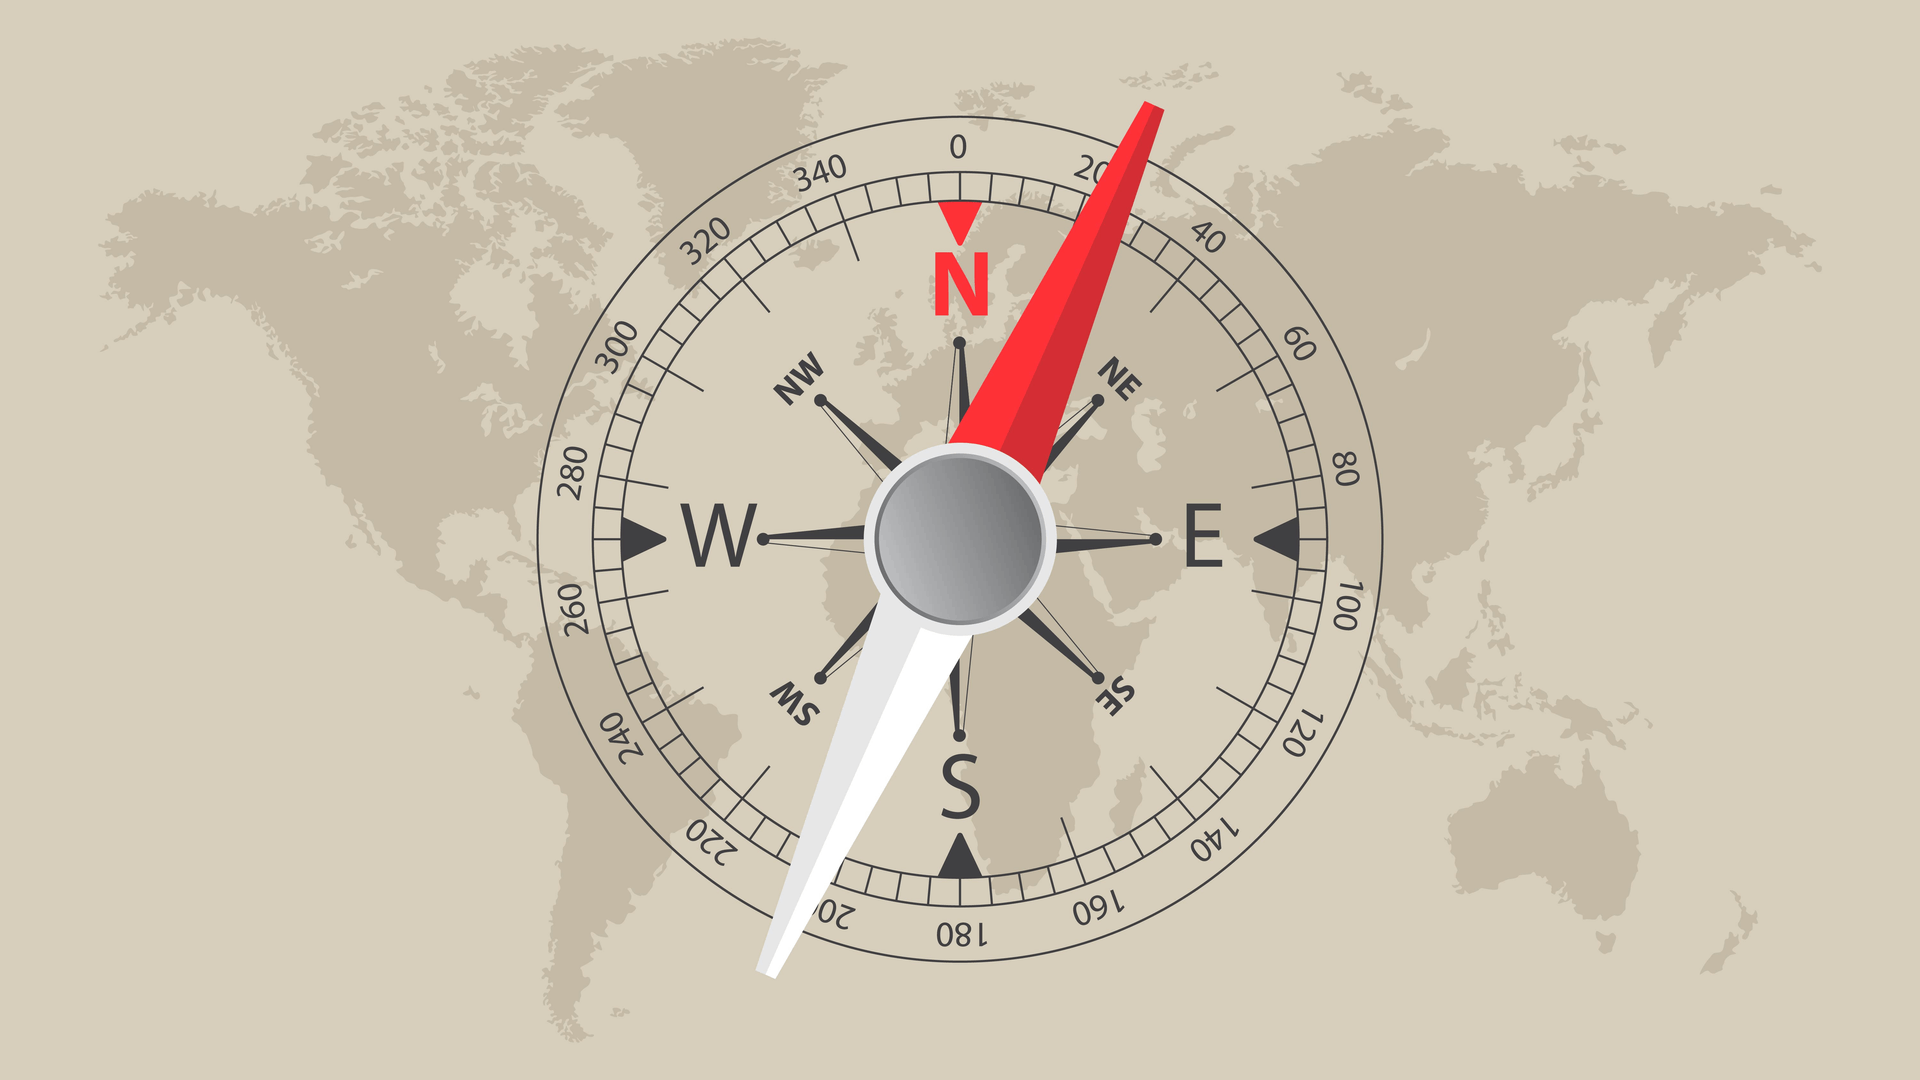 <p>Na kompasu se strane sveta obeležavaju skraćenicama, na engleskom jeziku.</p>
<p>N (north - sever)<br />S (south - jug)<br />E (east - istok)<br />W (west - zapad)</p>